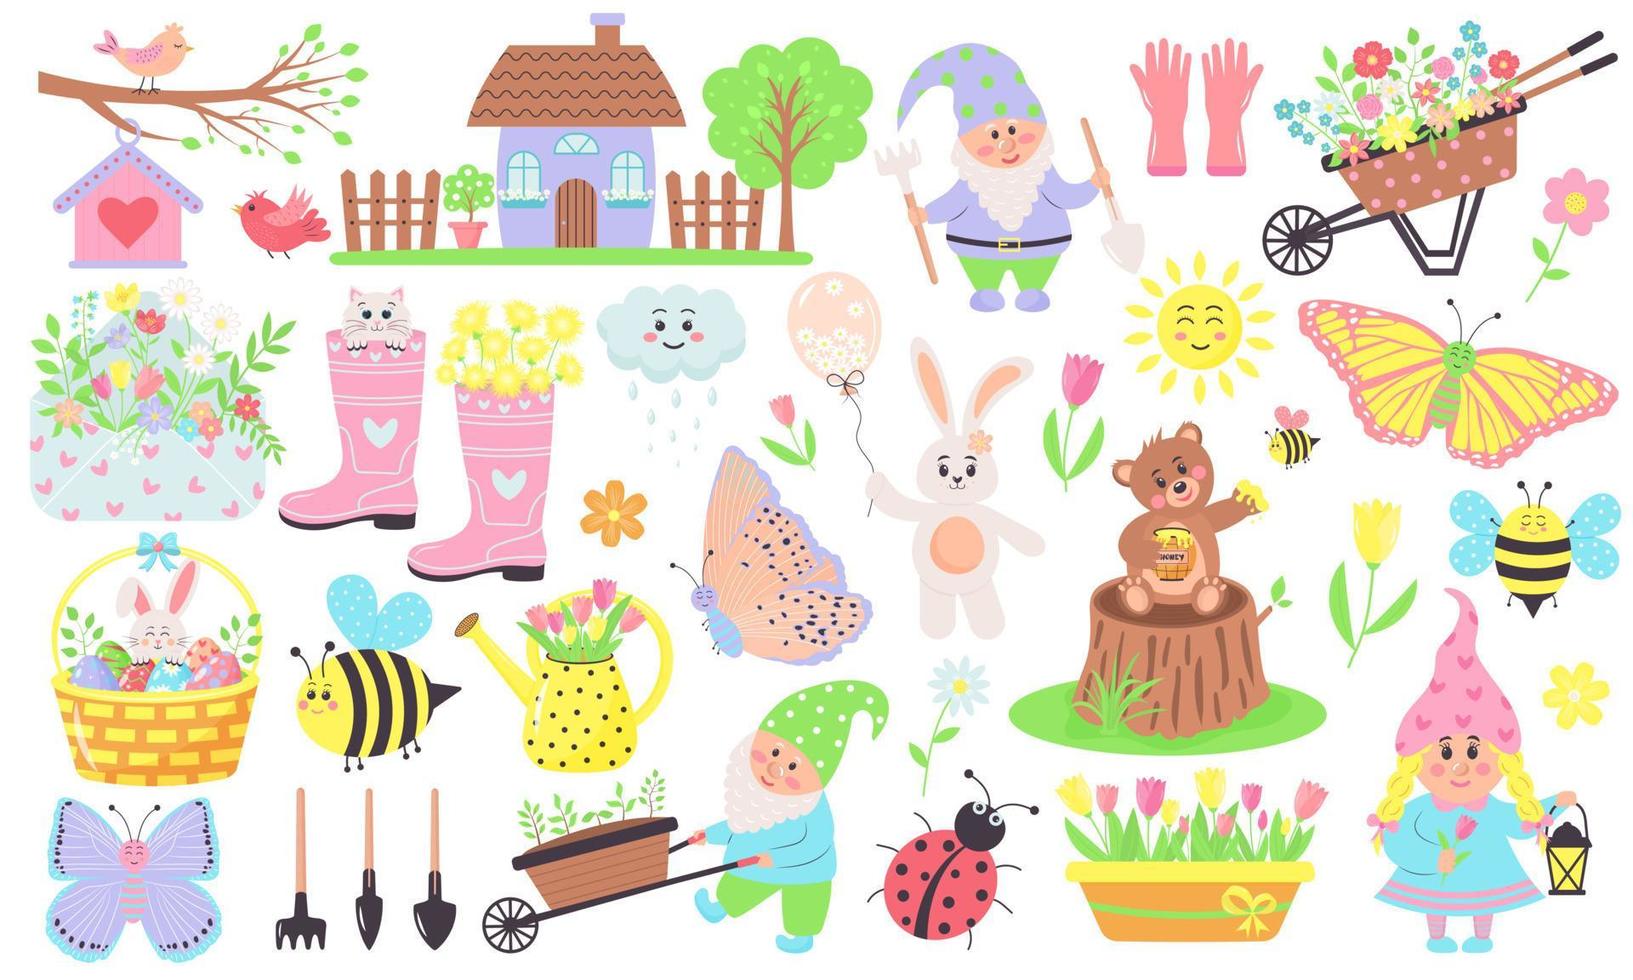 Garten- und Frühlingselemente wie Blumen, Gnome, Tiere, Vögel, Bienen, Schmetterlinge und andere. Perfekt für Scrapbooking, Grußkarten, Web, Poster, Cover, Tags, Einladungen, Sticker-Kits. vektor